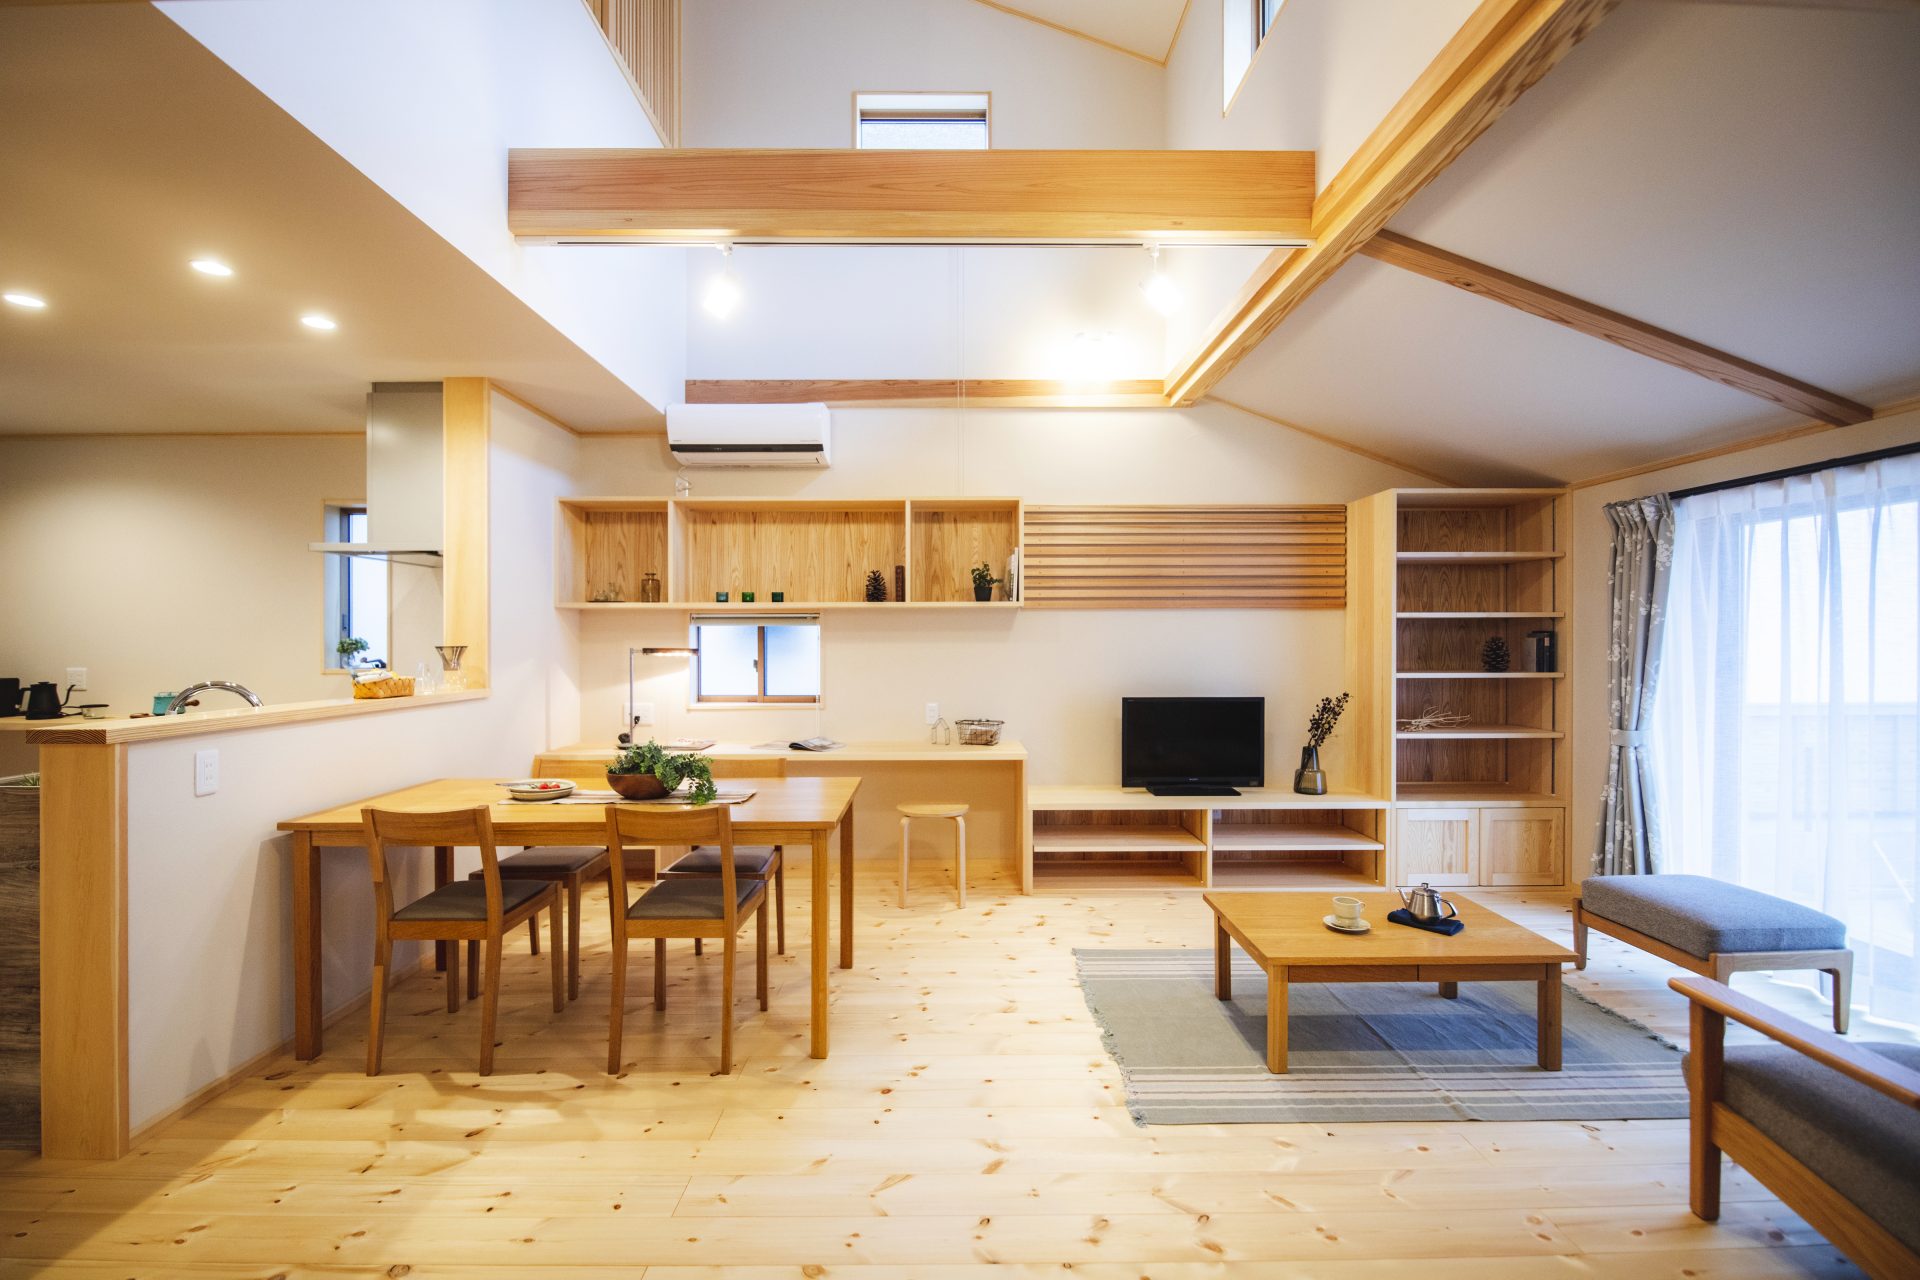 Căn nhà gỗ xây dựng theo lối kiến trúc Nhật Bản với 1 trệt 1 lửng đủ bình yên cho gia đình trẻ - Ảnh 5.